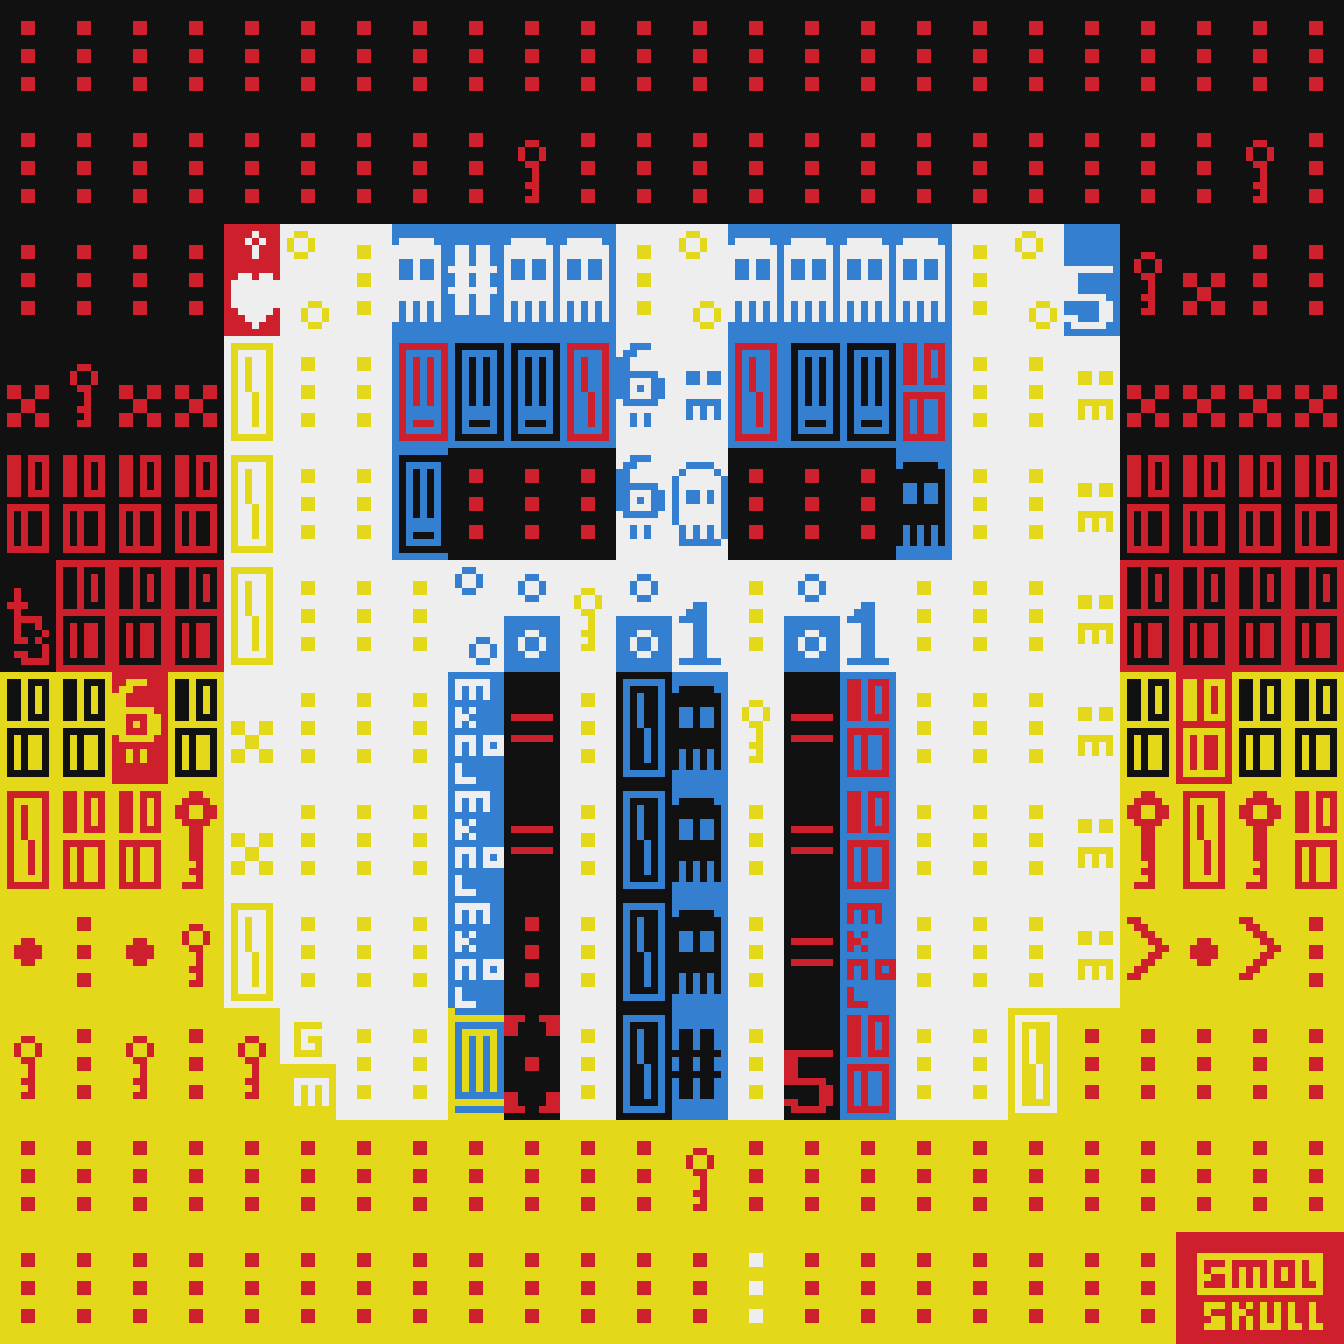 Mark Knol's ASCII-SMOLSKULL #238